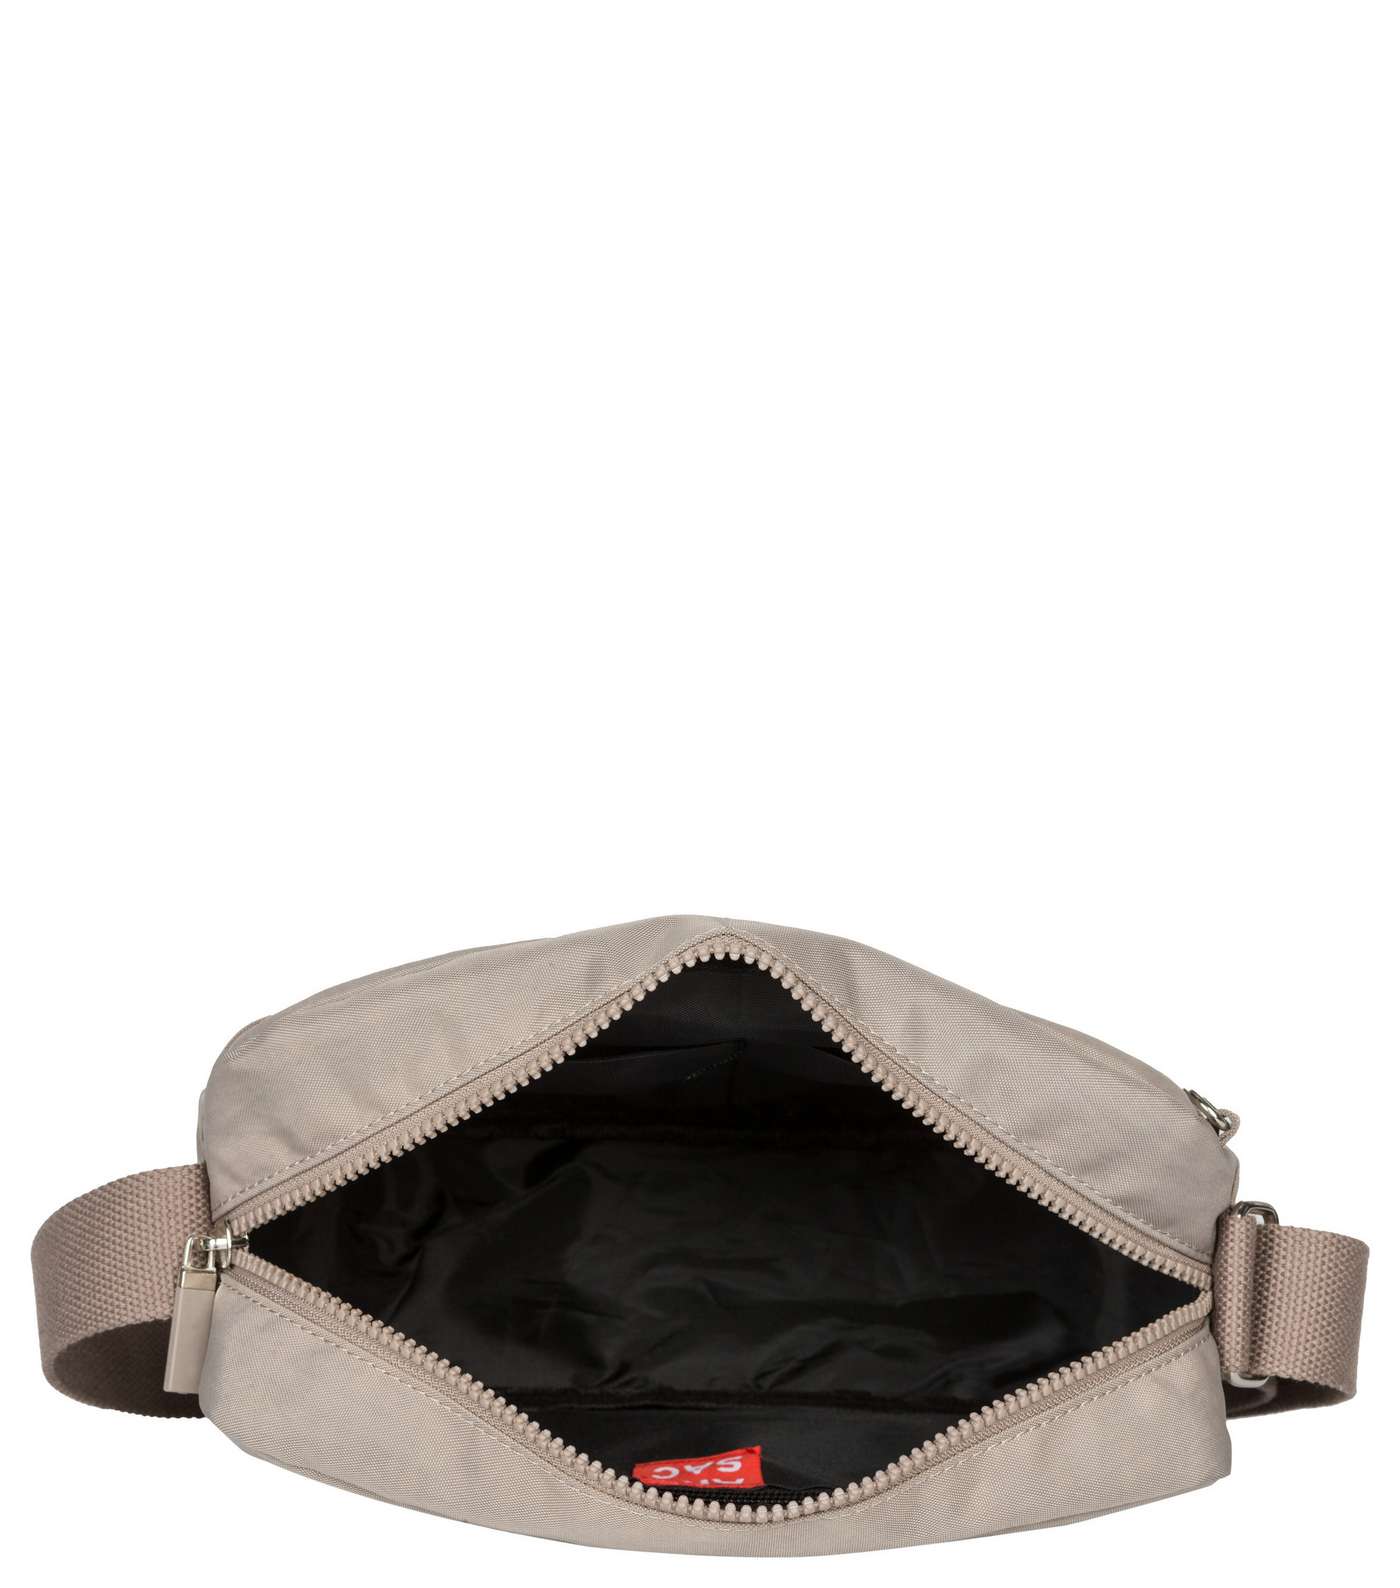 Artsac Grey Double Zip Pocket Cross Body Bag Image 4